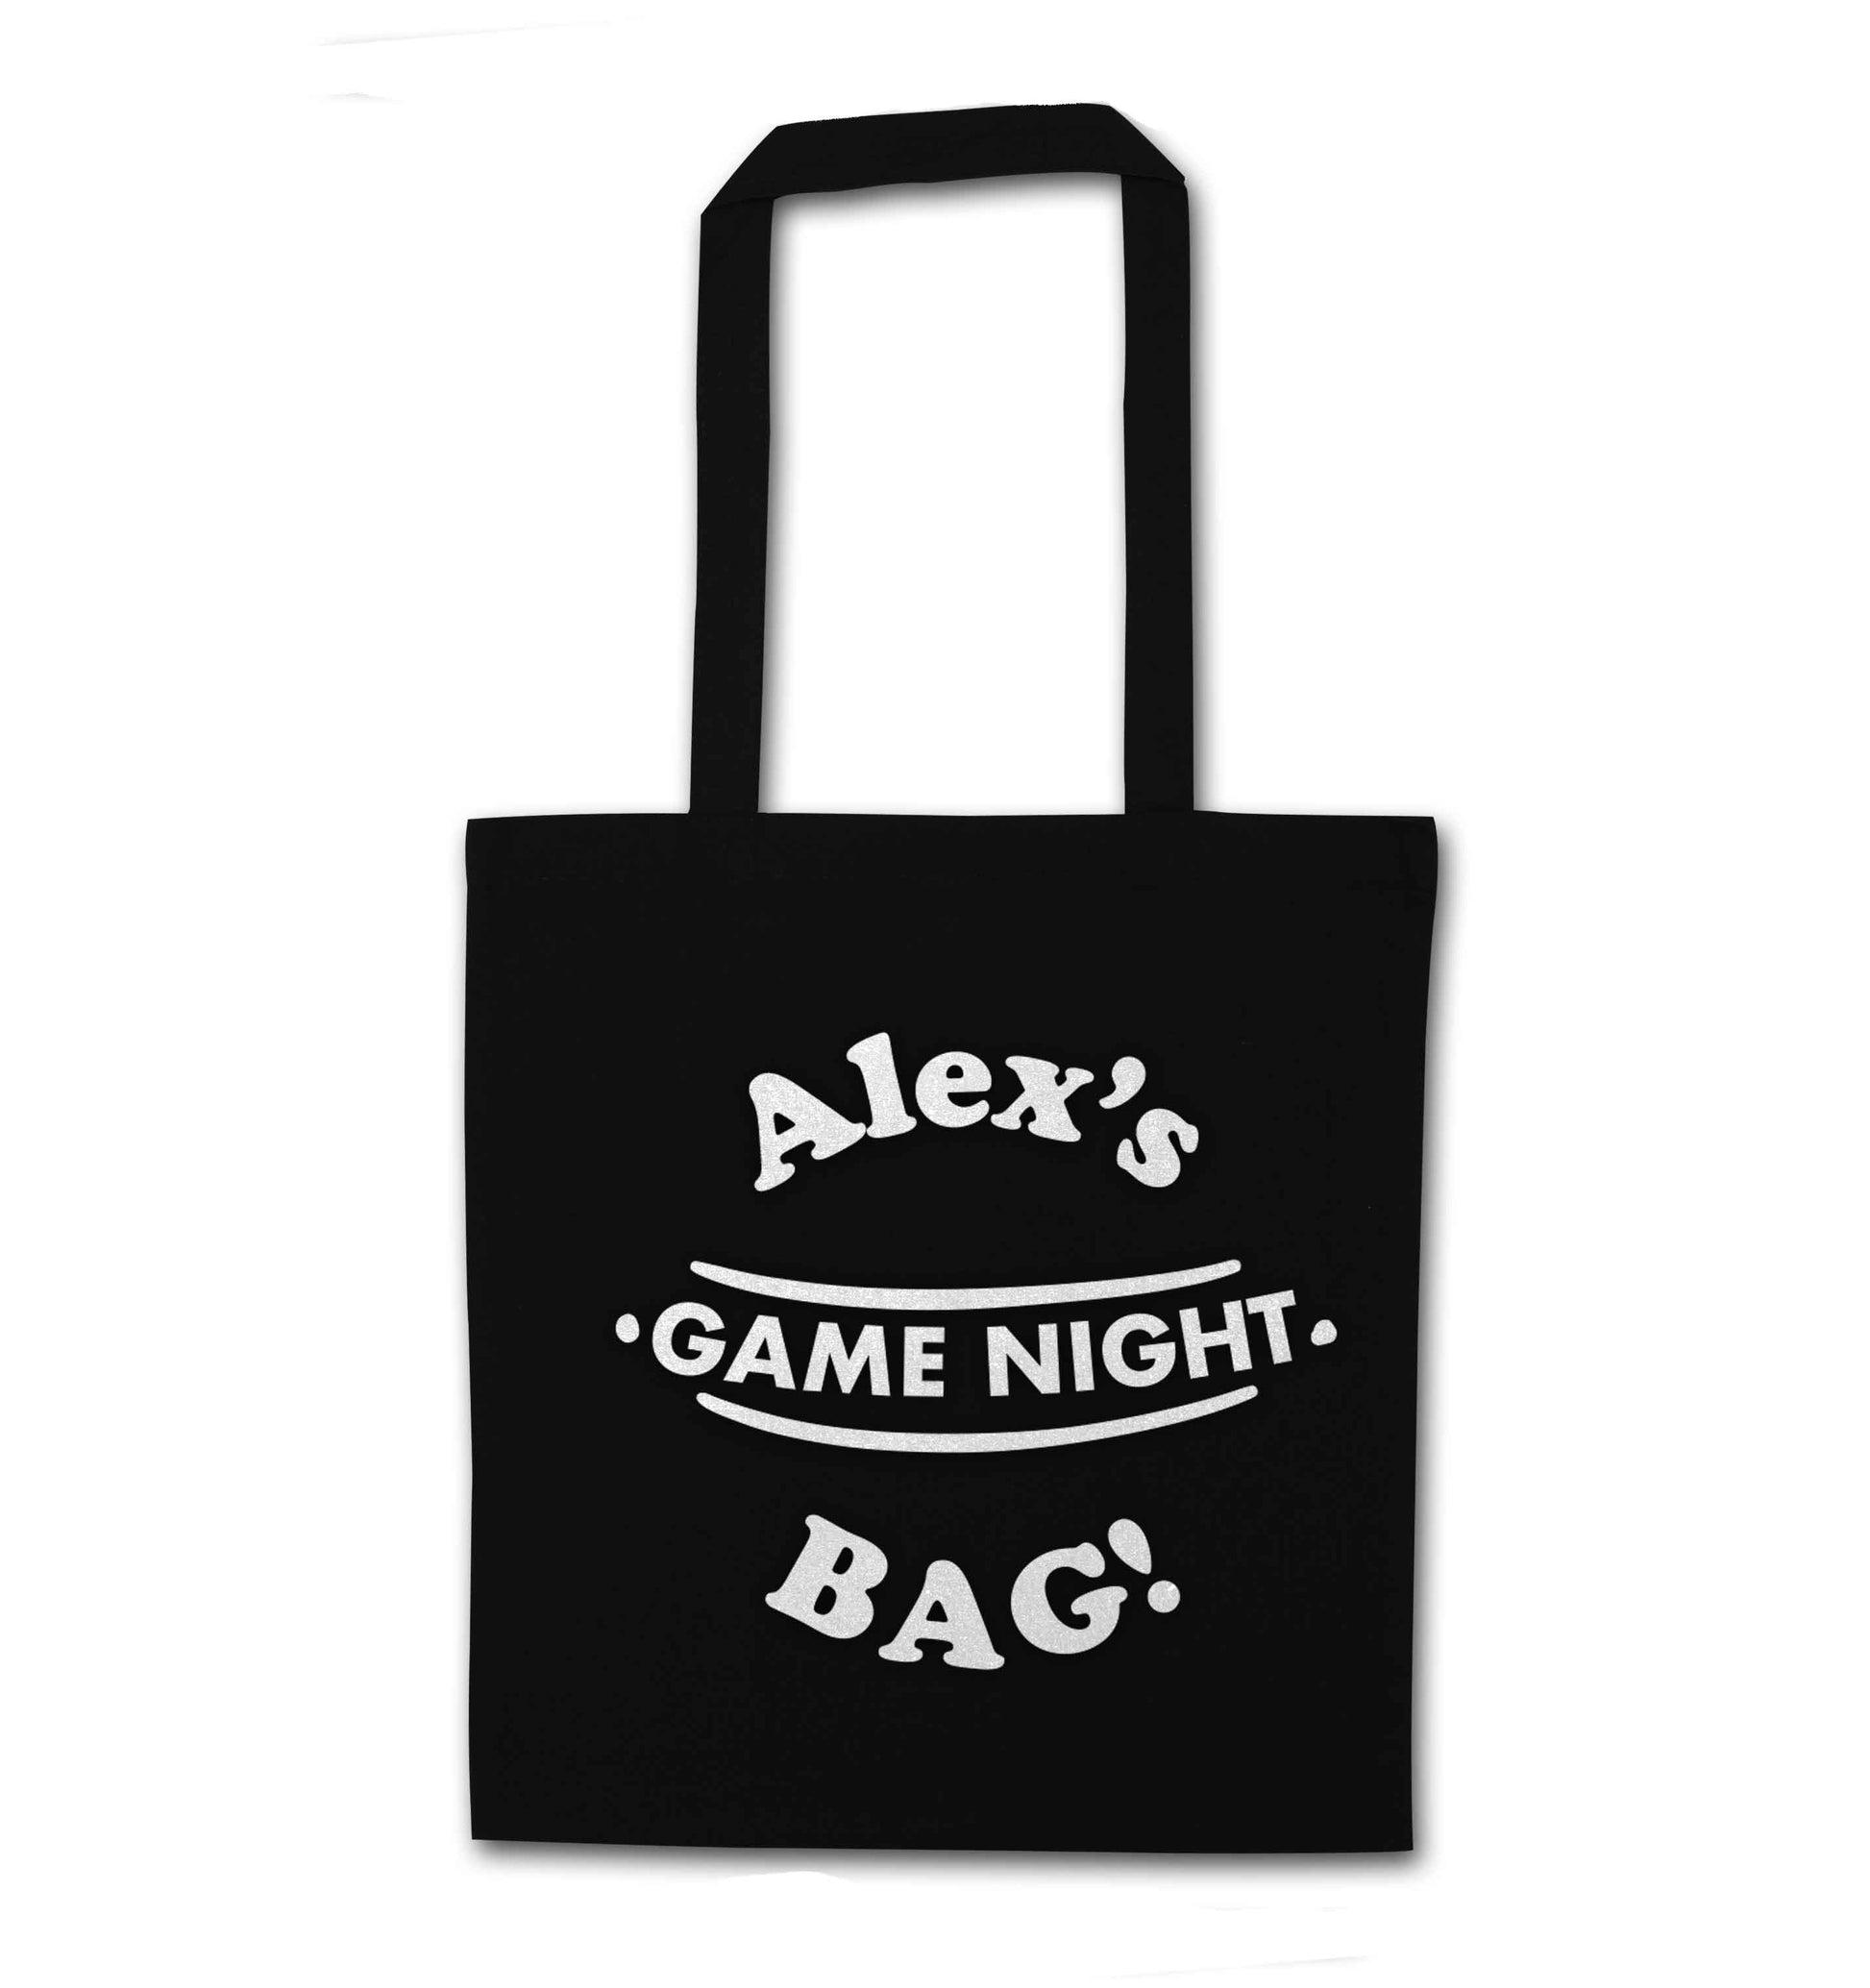 Personalised game night bag black tote bag